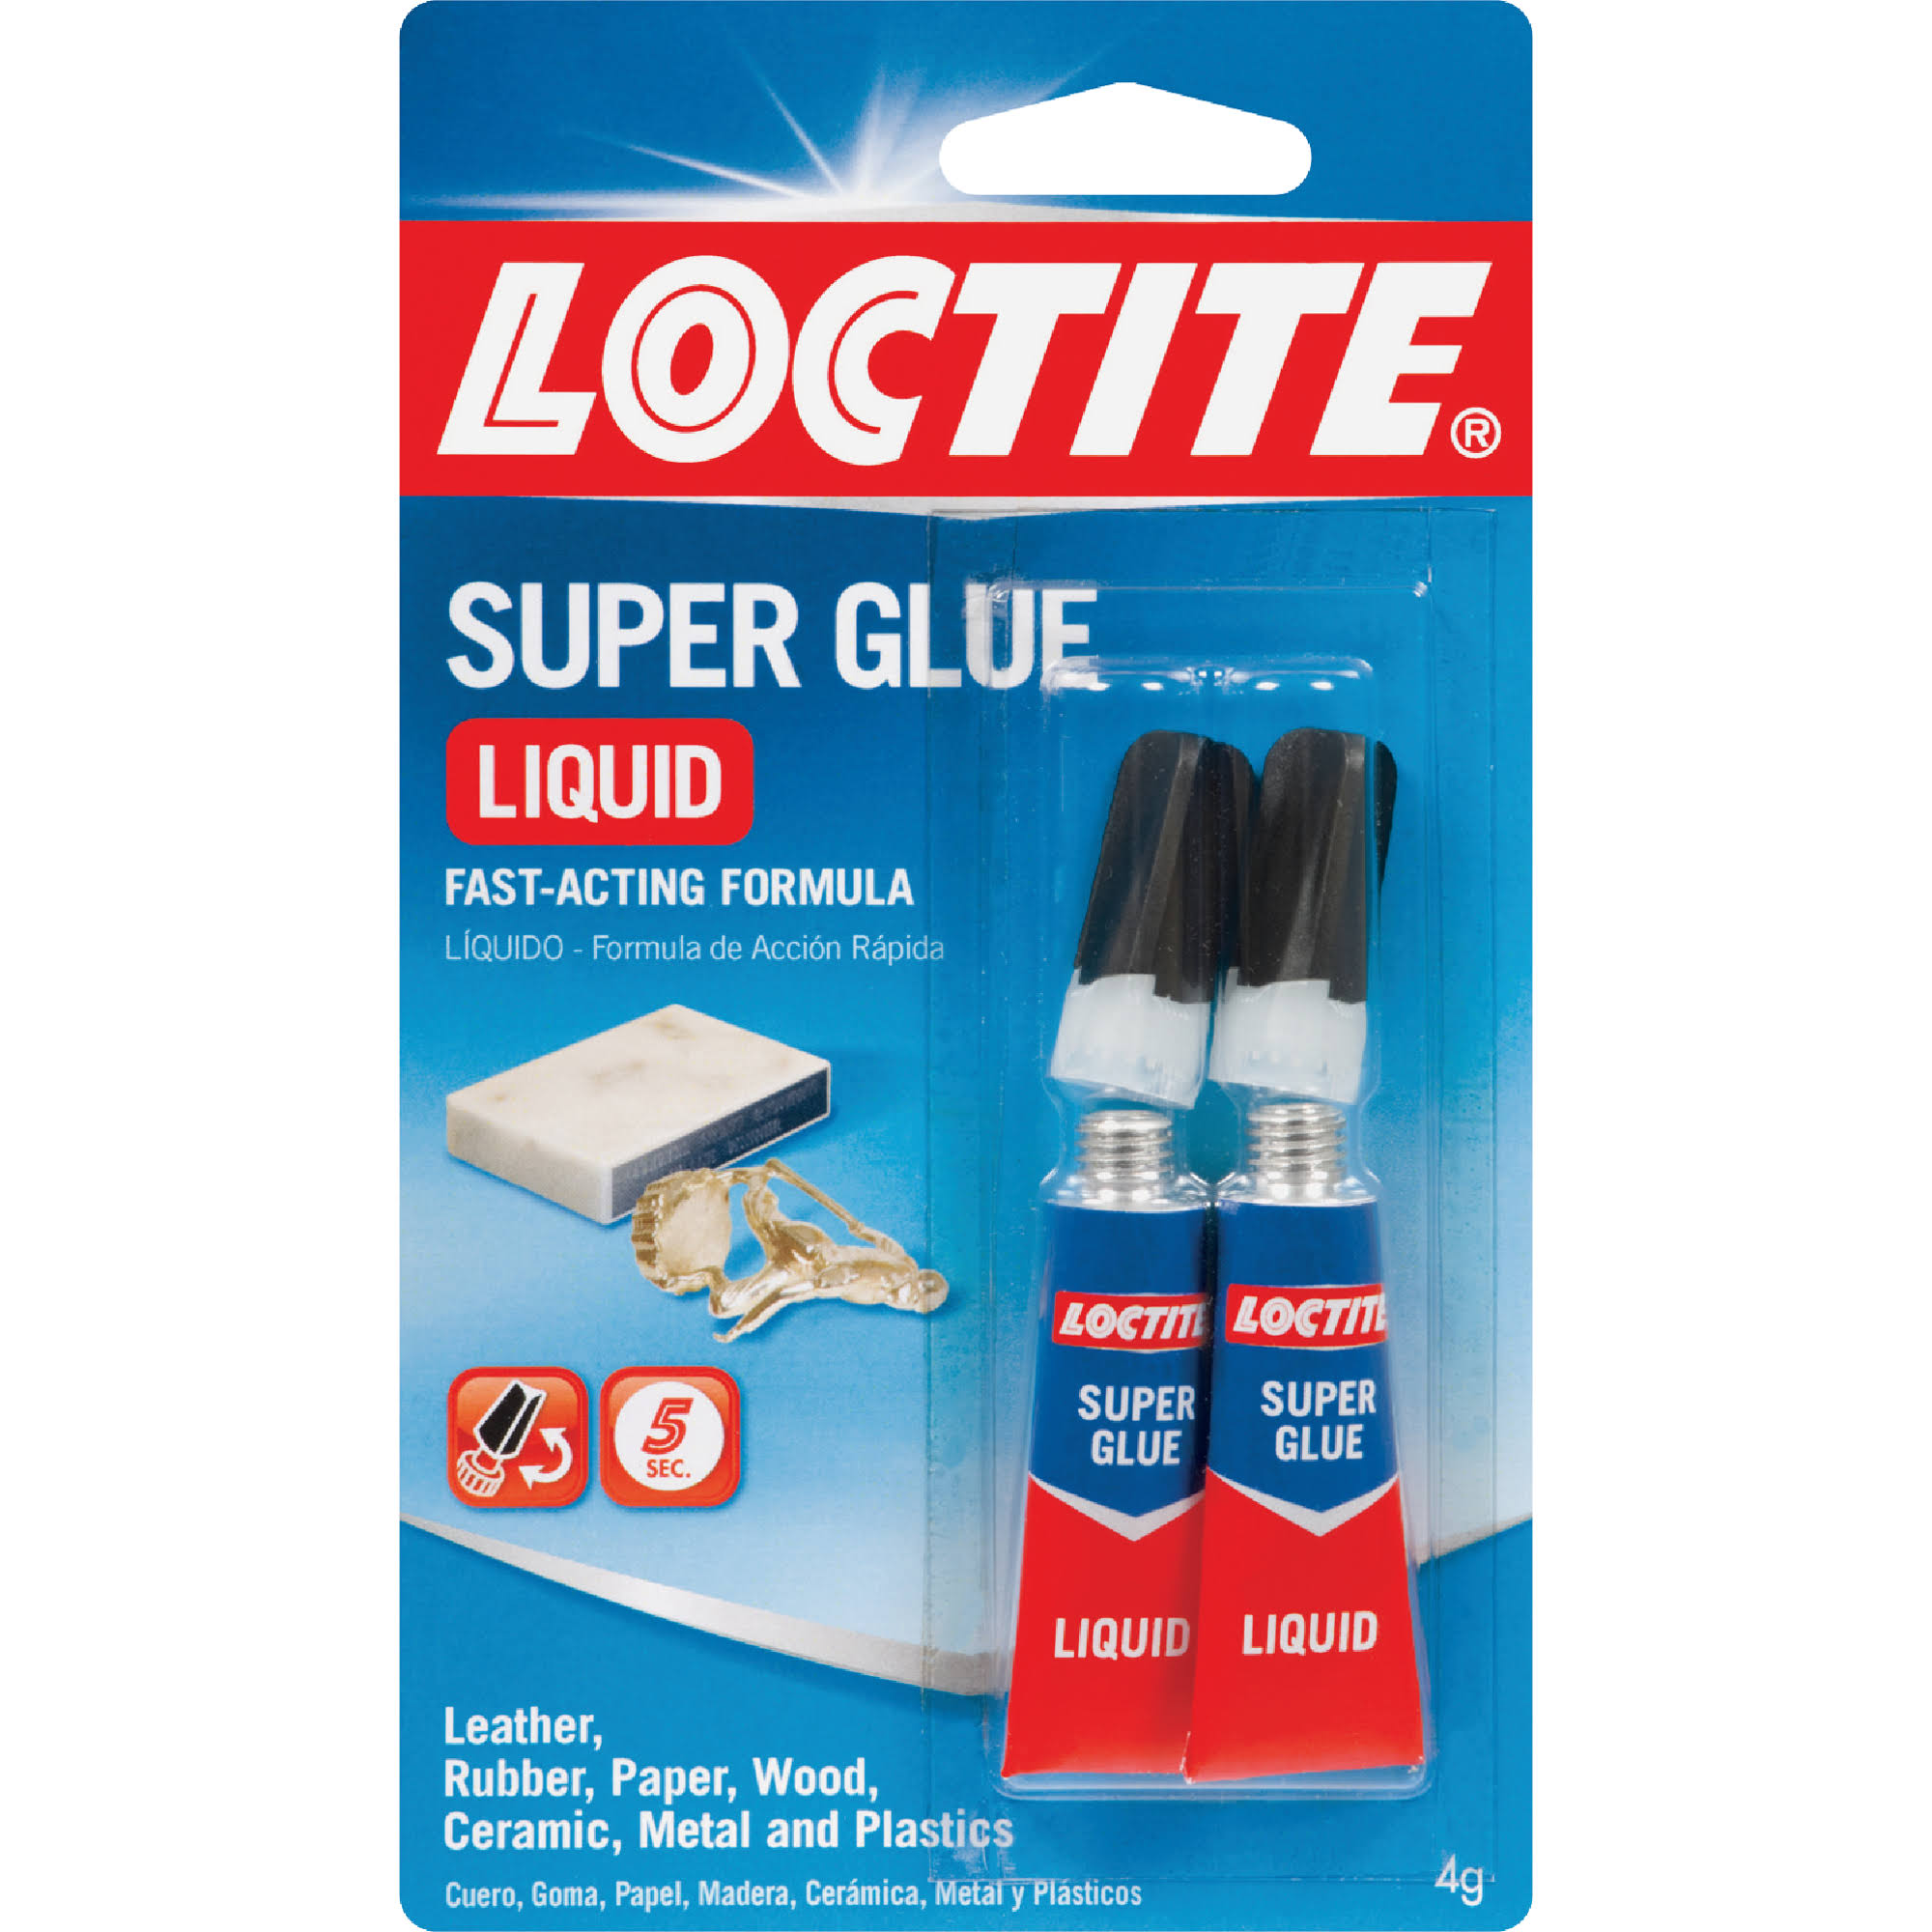 Loctite Liquid Super Glue - 2g, 2pcs